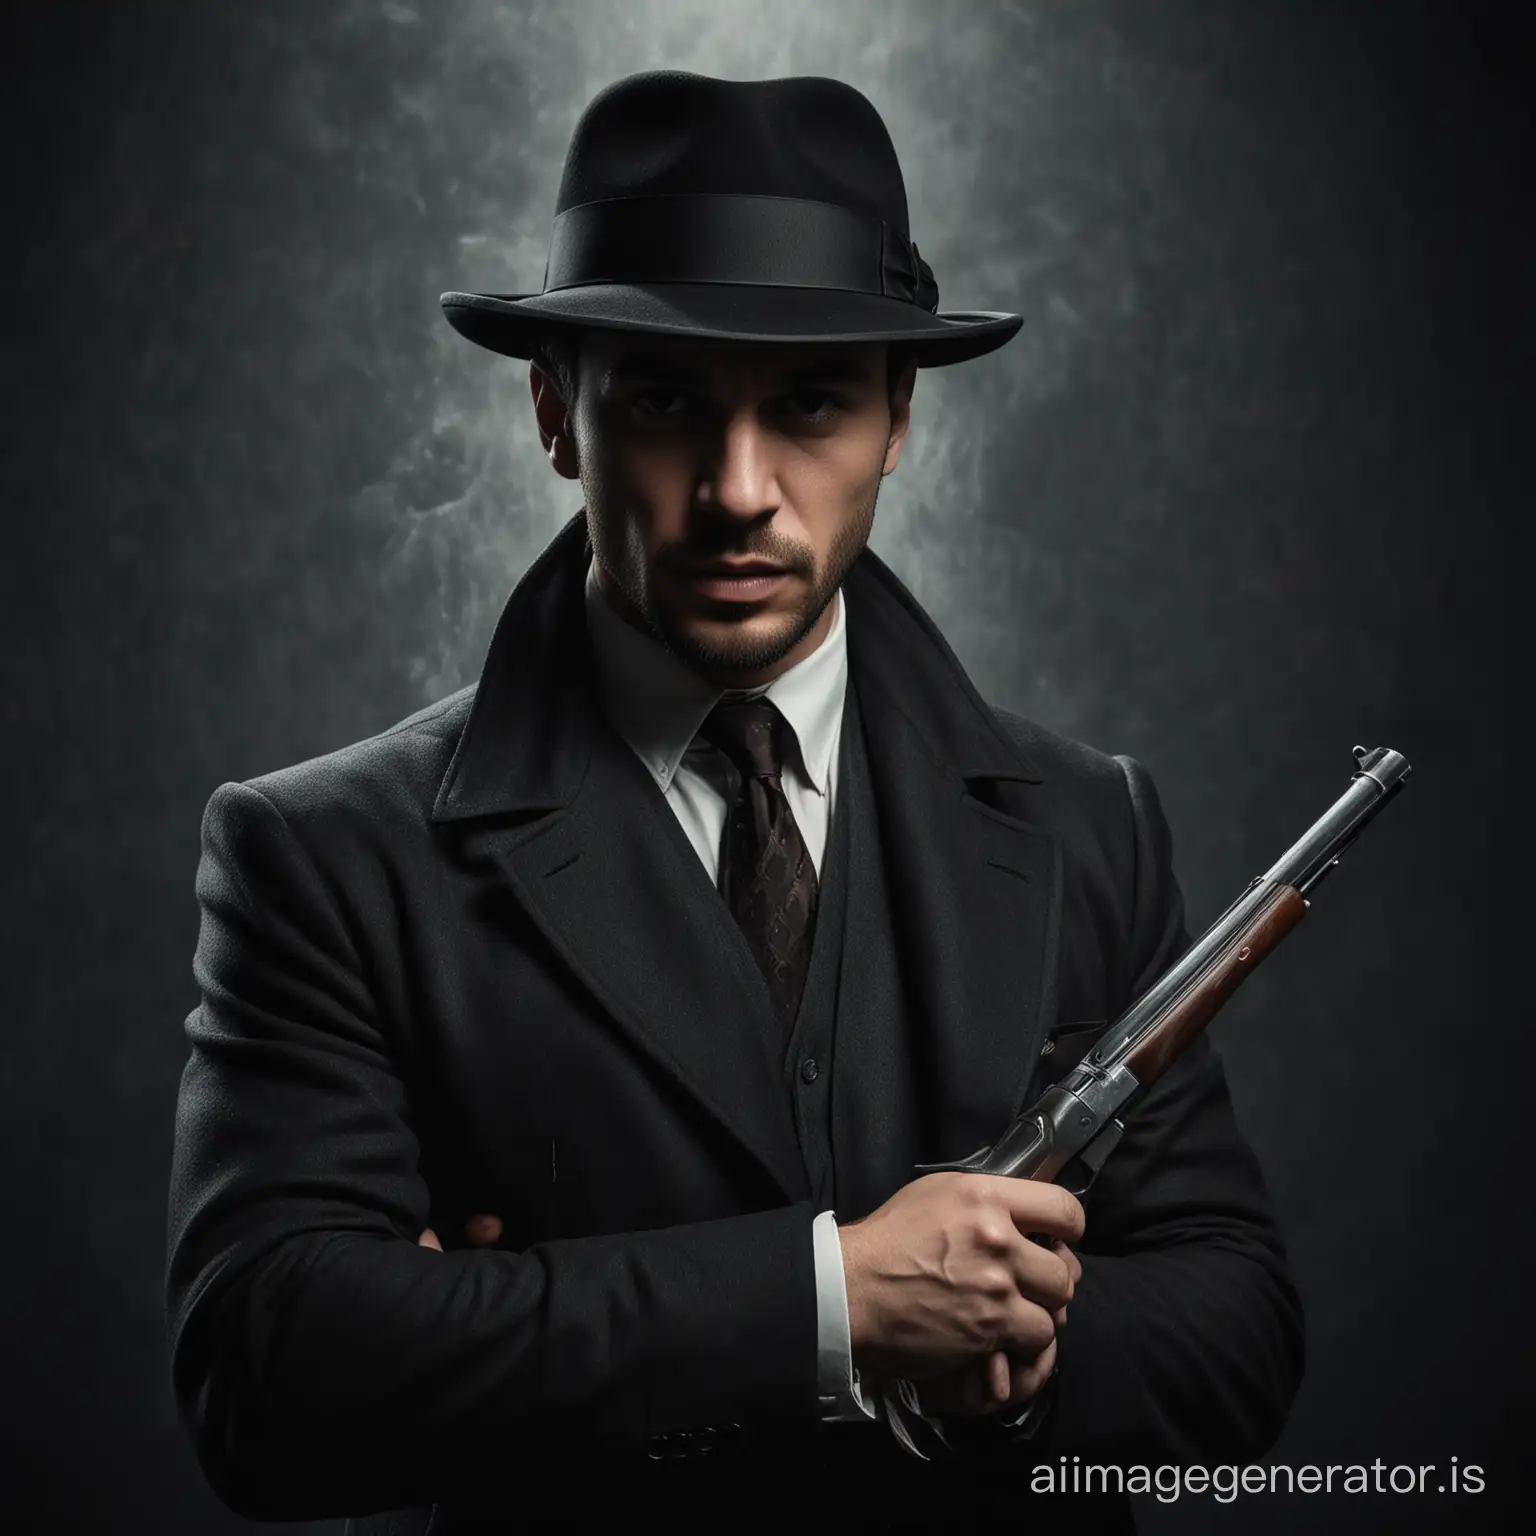 Мафия один человек в шляпе с оружием города мужчина брюнет на темном фоне время 1930 год